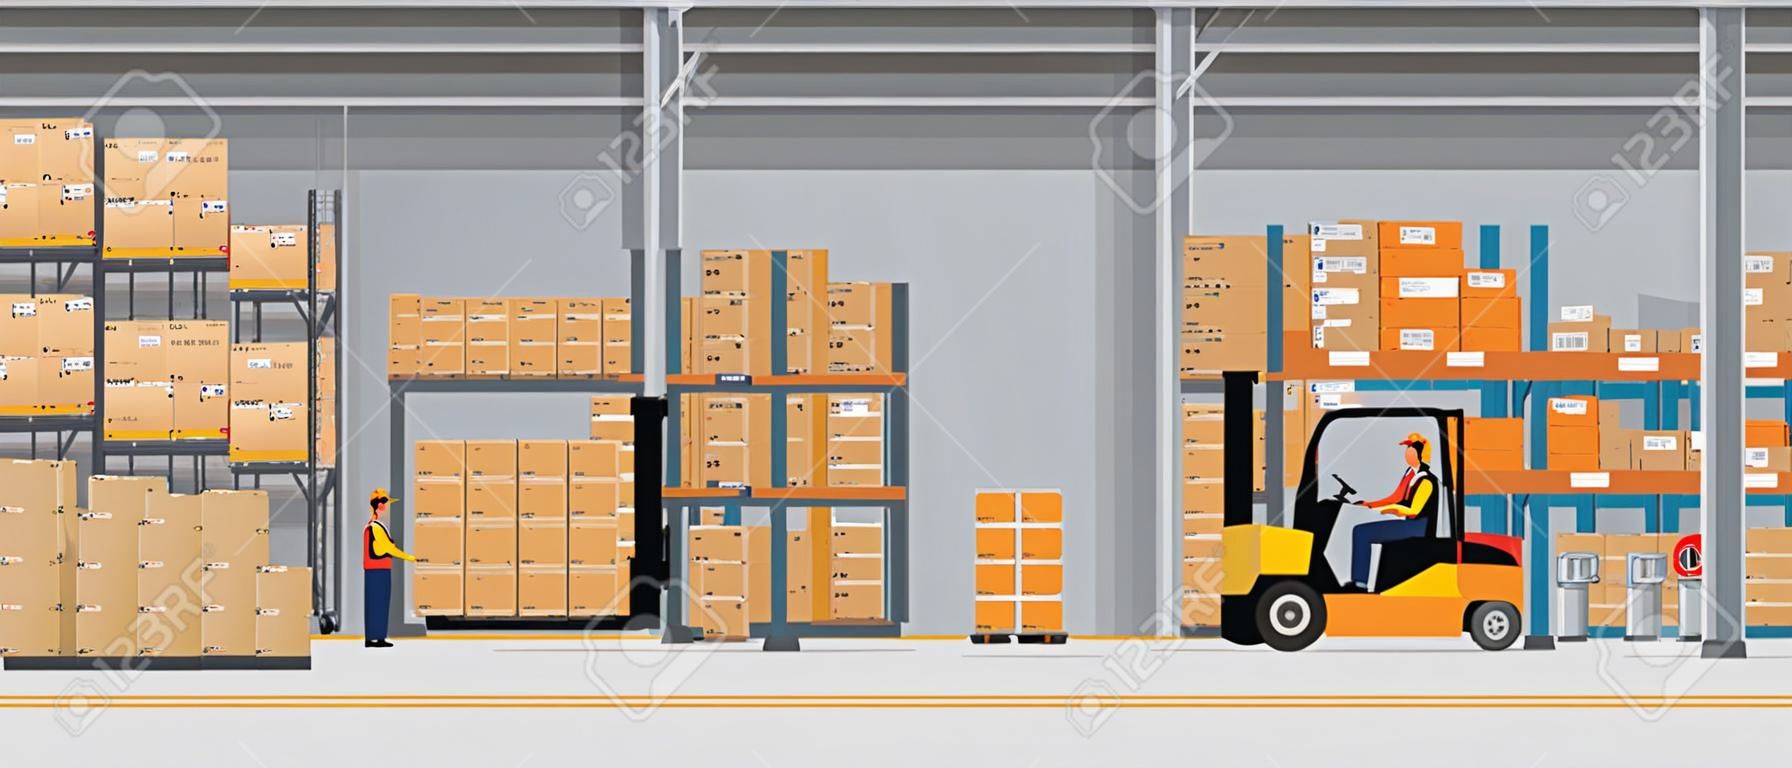 Interior del almacén con cajas en rack y gente trabajando. Concepto de servicio de entrega logística de estilo plano y de color sólido. Ilustración de vector.